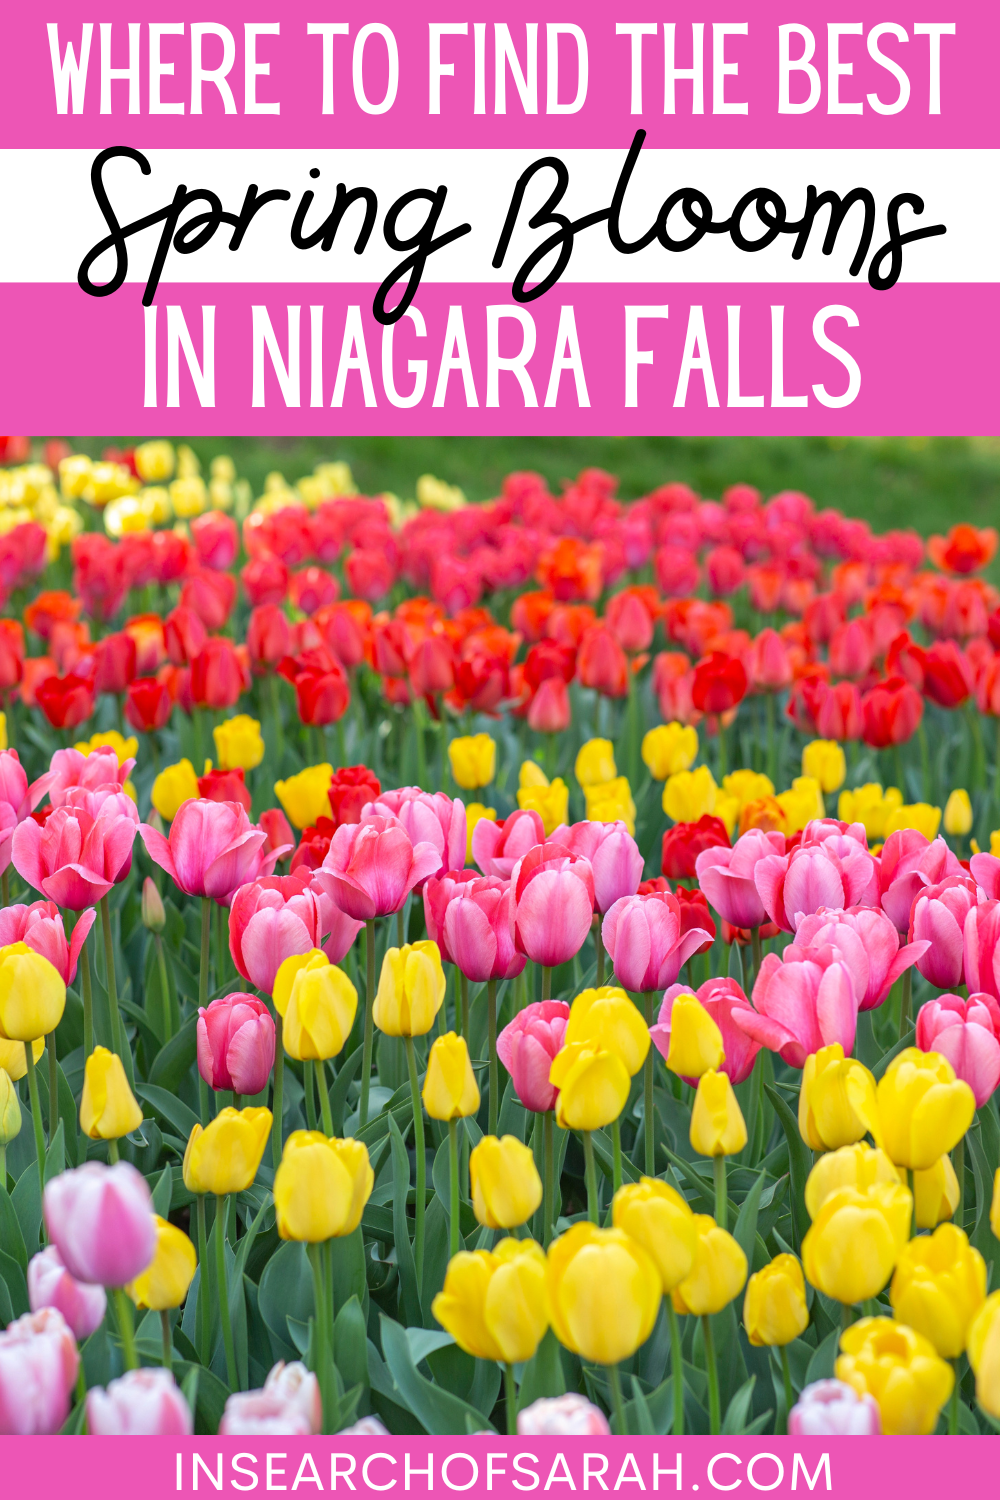 niagara falls spring blooms